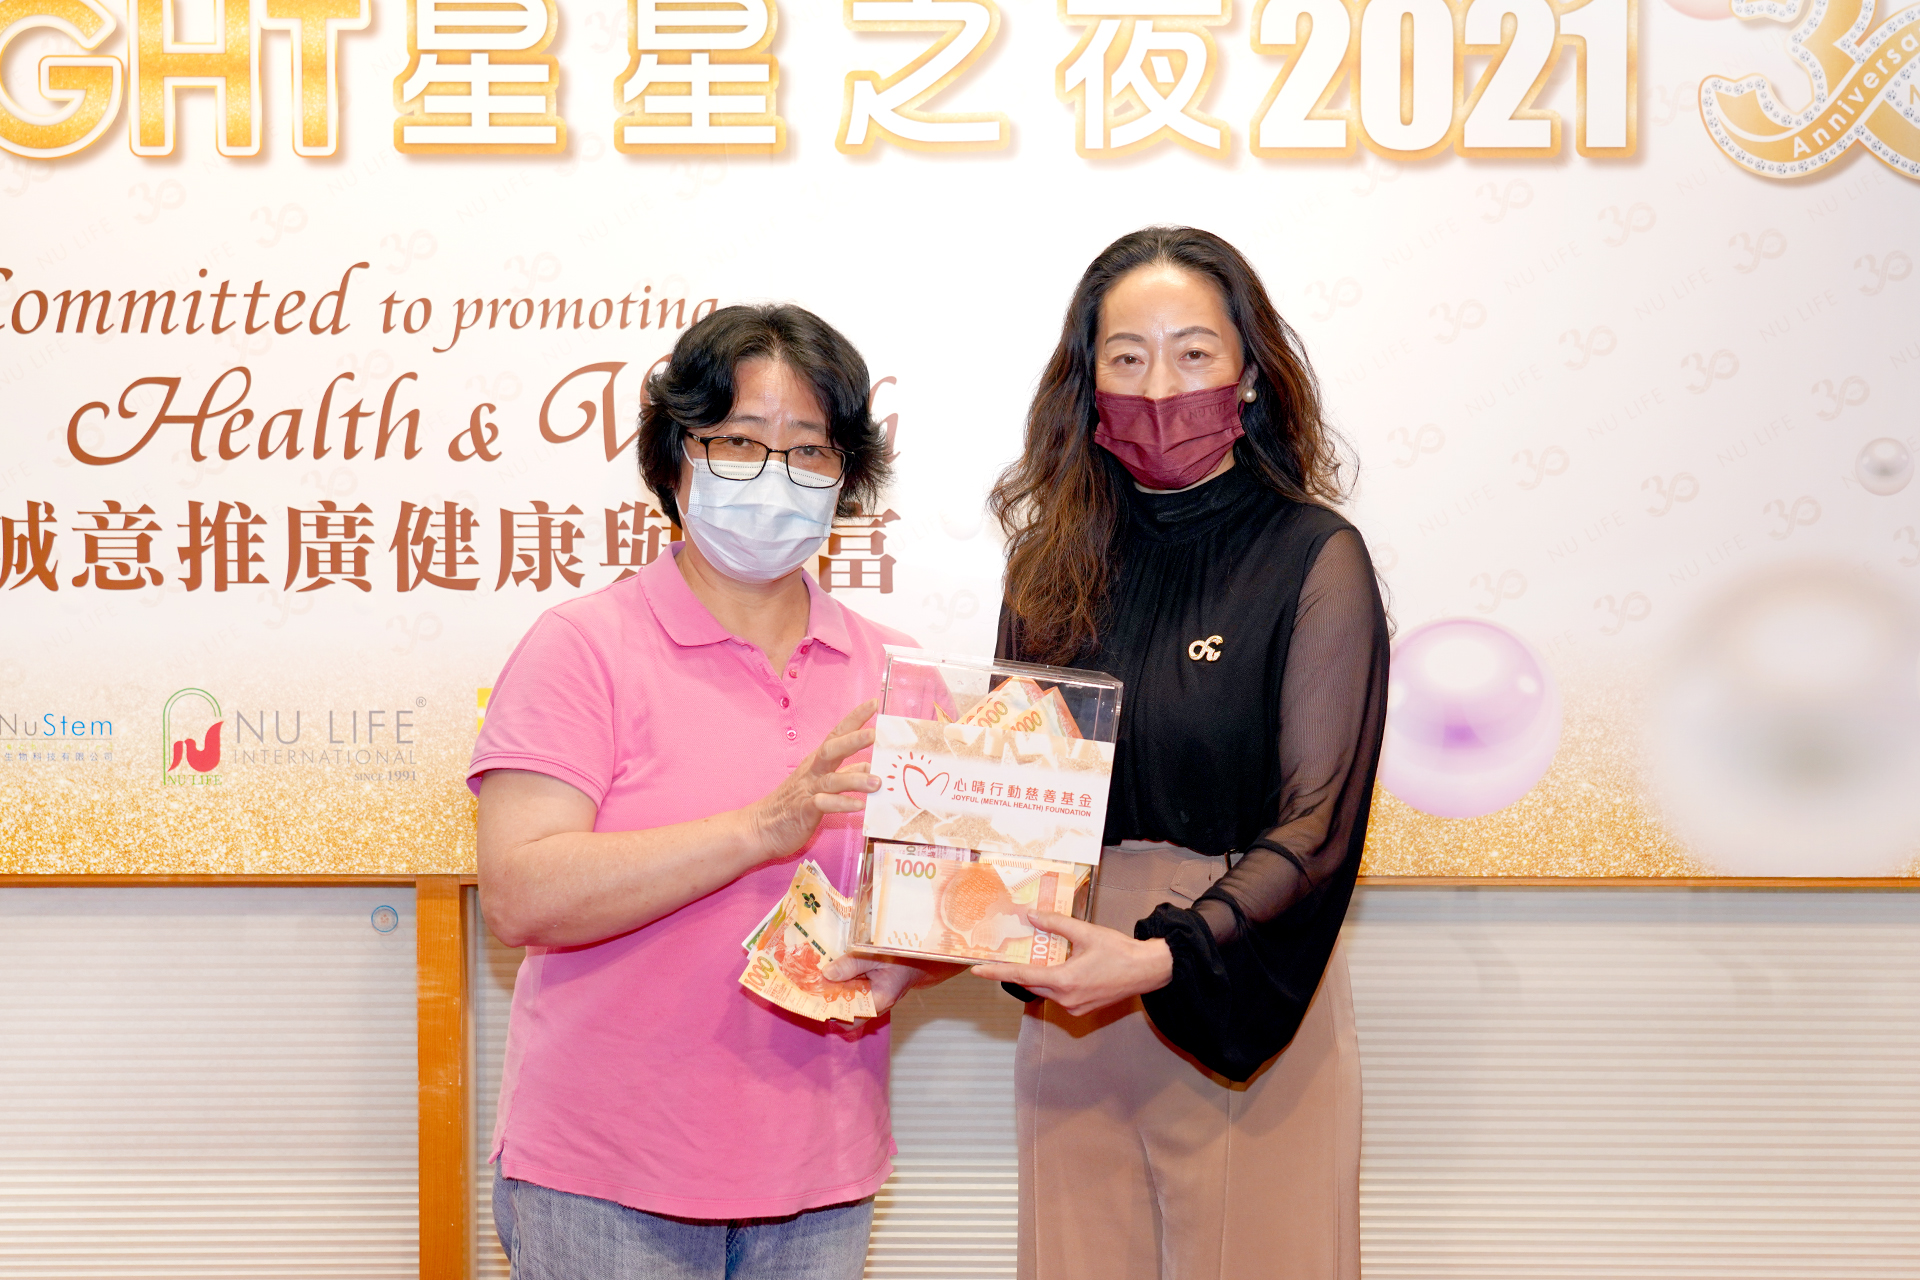 恭賀陳美仙女士從星級百萬富翁遊戲贏取HK$10,000獎金並與公司合共損助HK$10000予「心晴行動慈善基金」